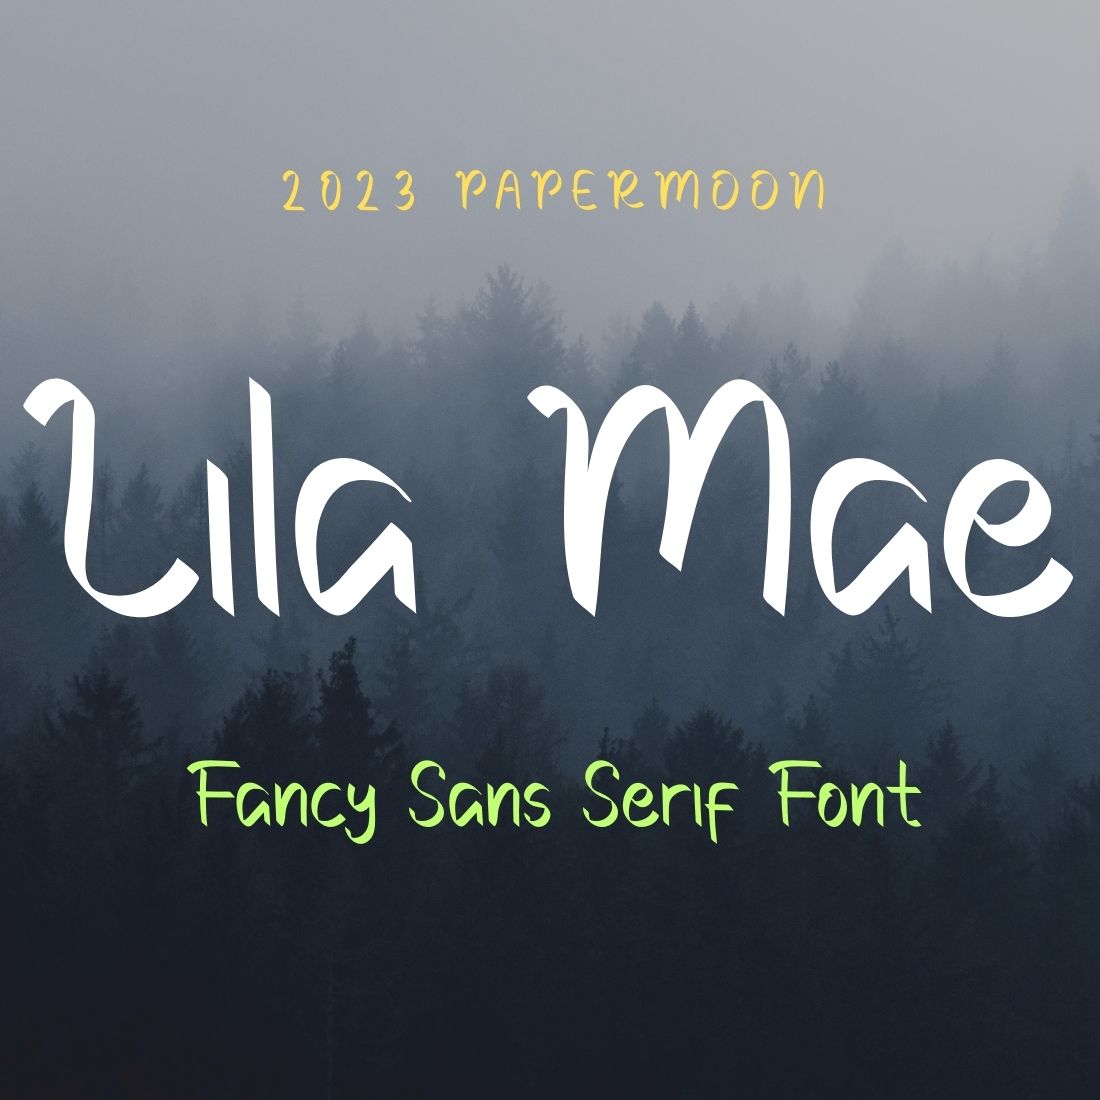 Lila Mae Fancy Sans Serif Font cover image.